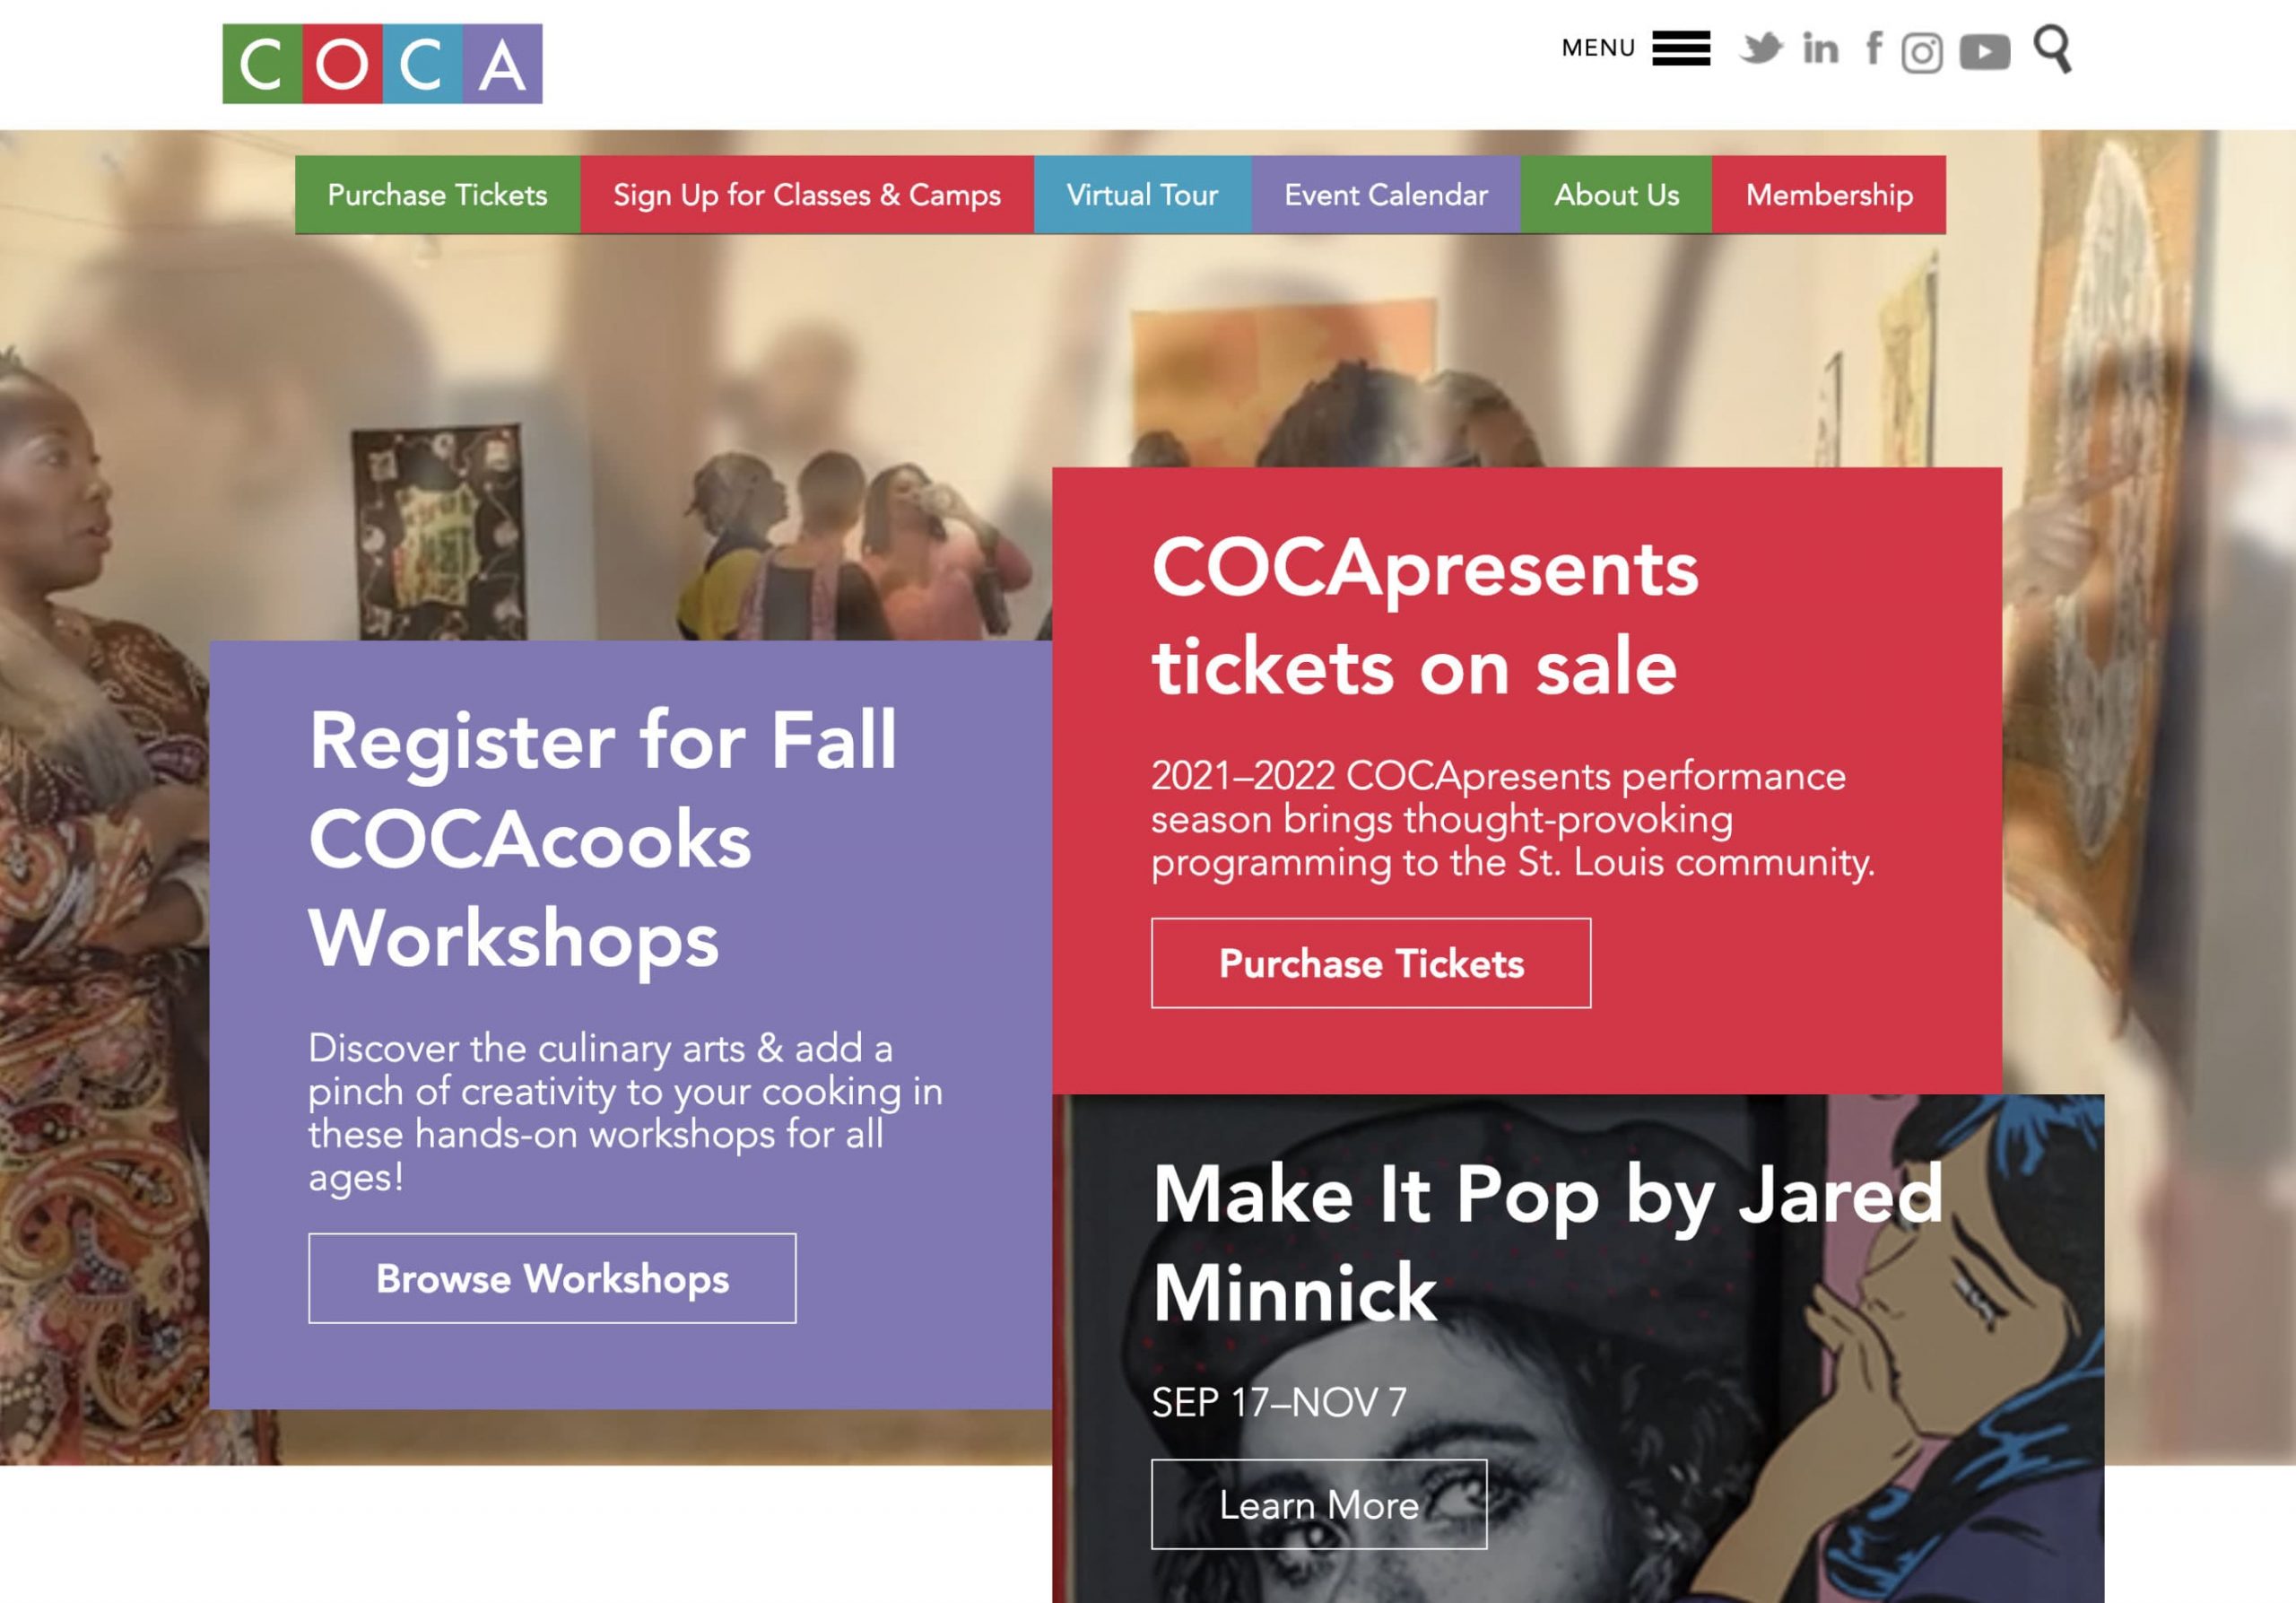 COCA Website Design